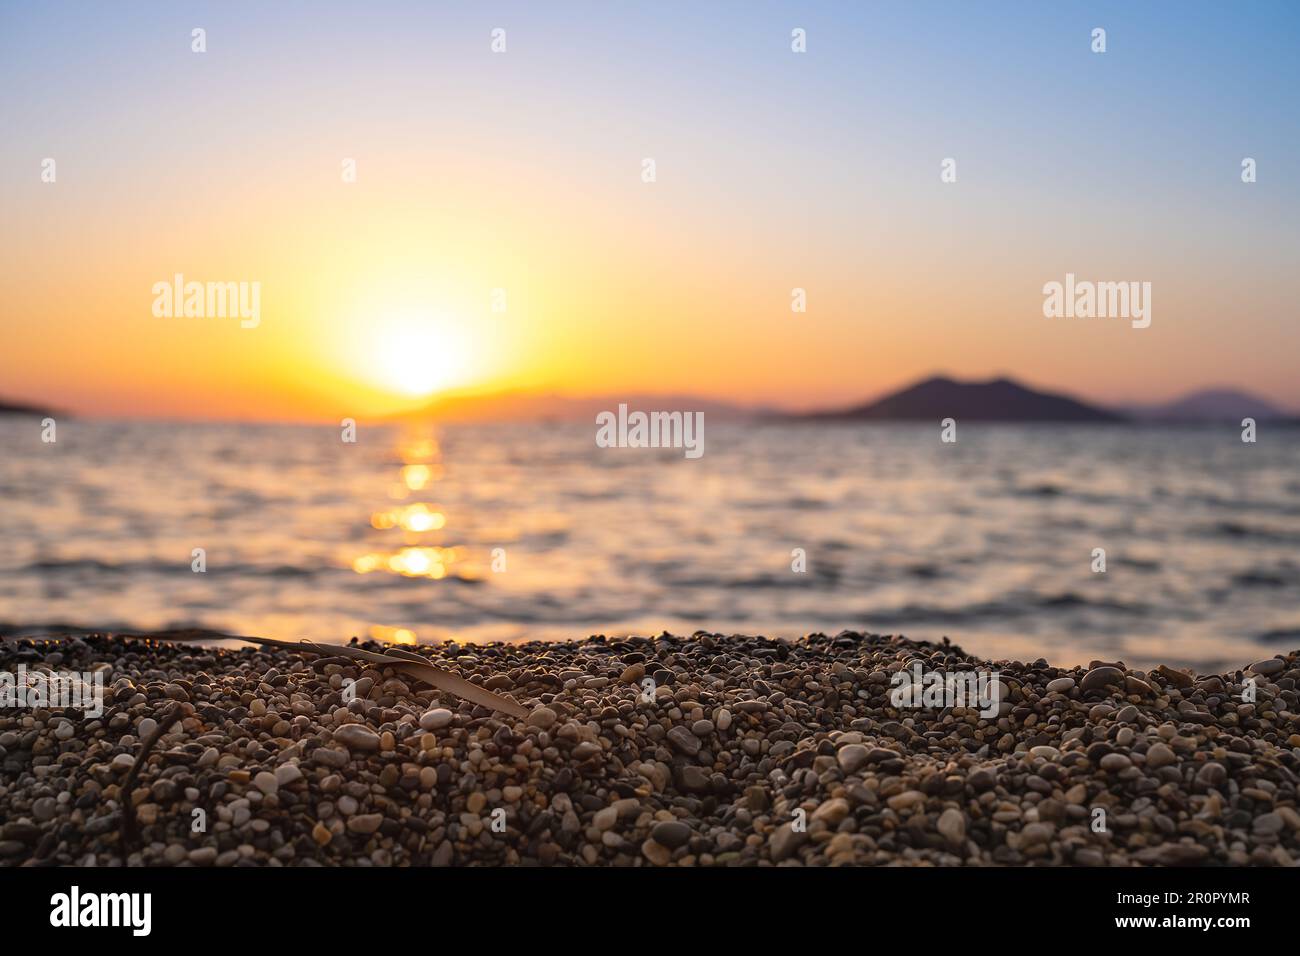 Sonnenuntergang über der Bucht, selektiver Fokus auf die Kieselsteine am Strand, verschwommener Hintergrund, Idee für Bildschirmschoner oder Werbung Stockfoto